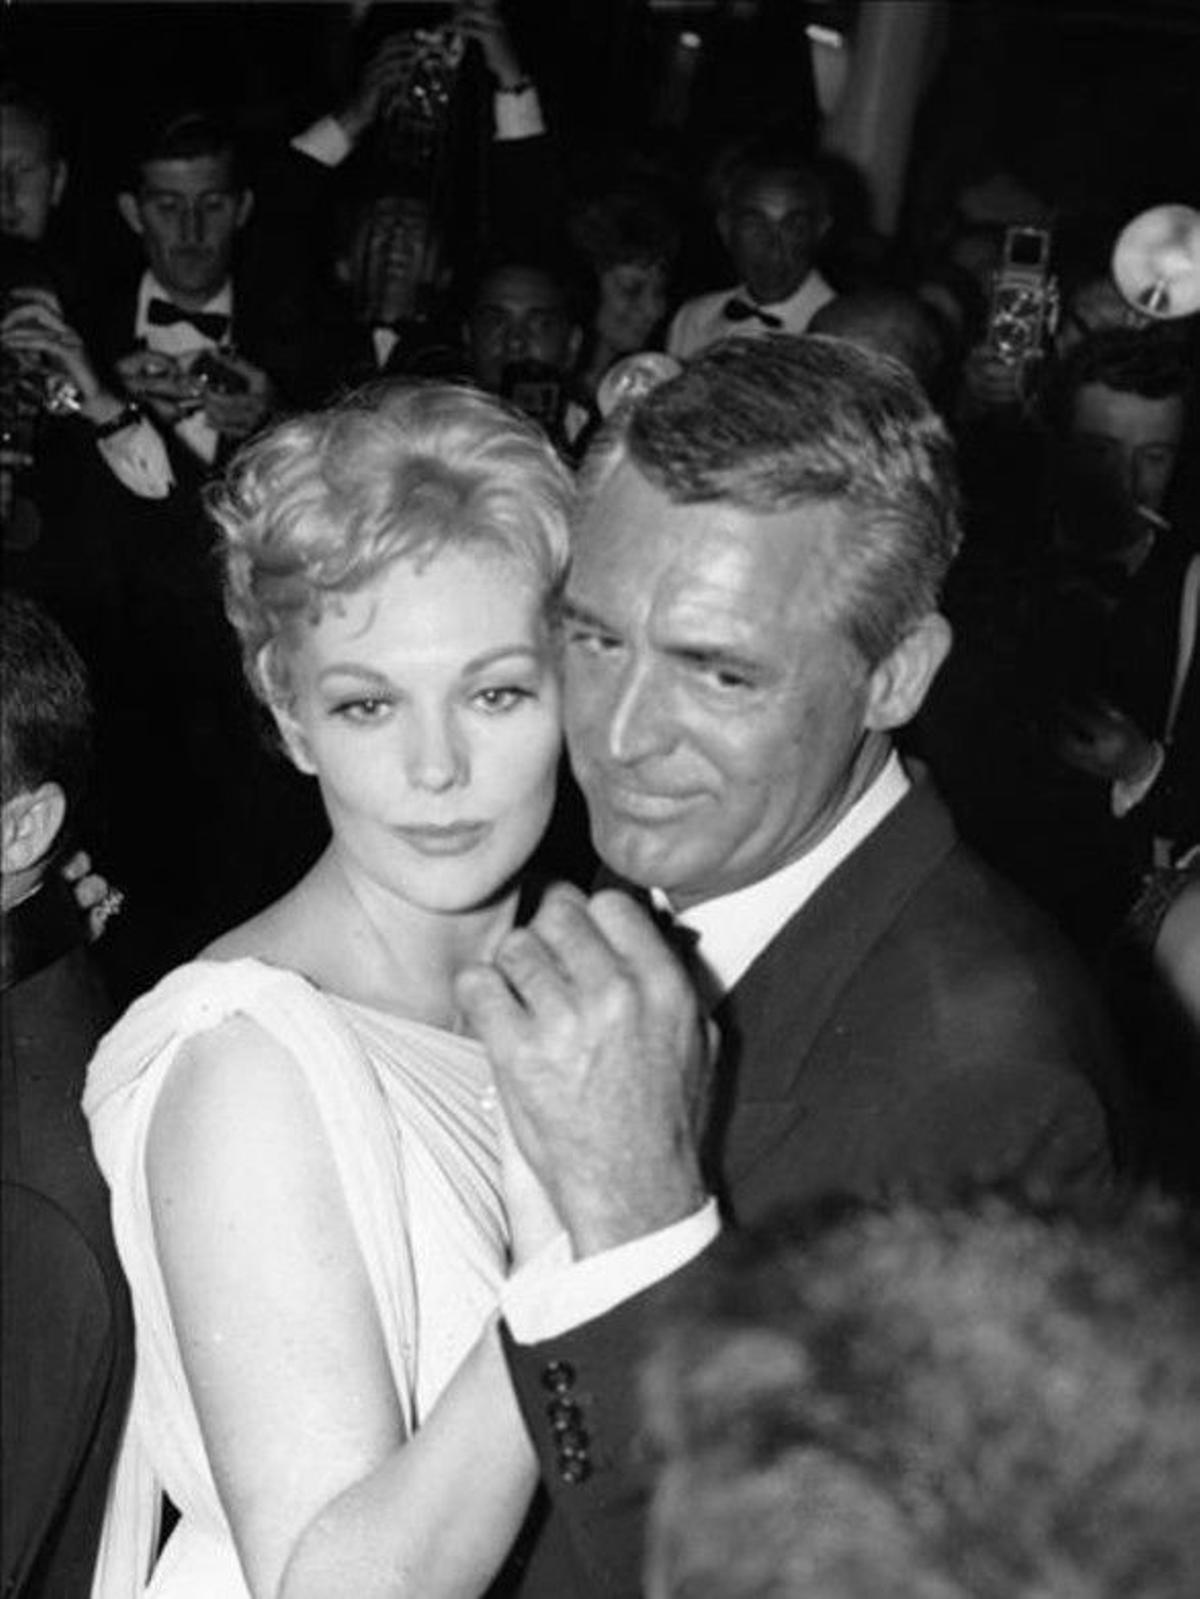 El 13 de maig de 1959, l’actriu nord-americana Kim Novak va ballar amb Cary Grant, després de la presentació de la pel·lícula ’Middle of the night’.